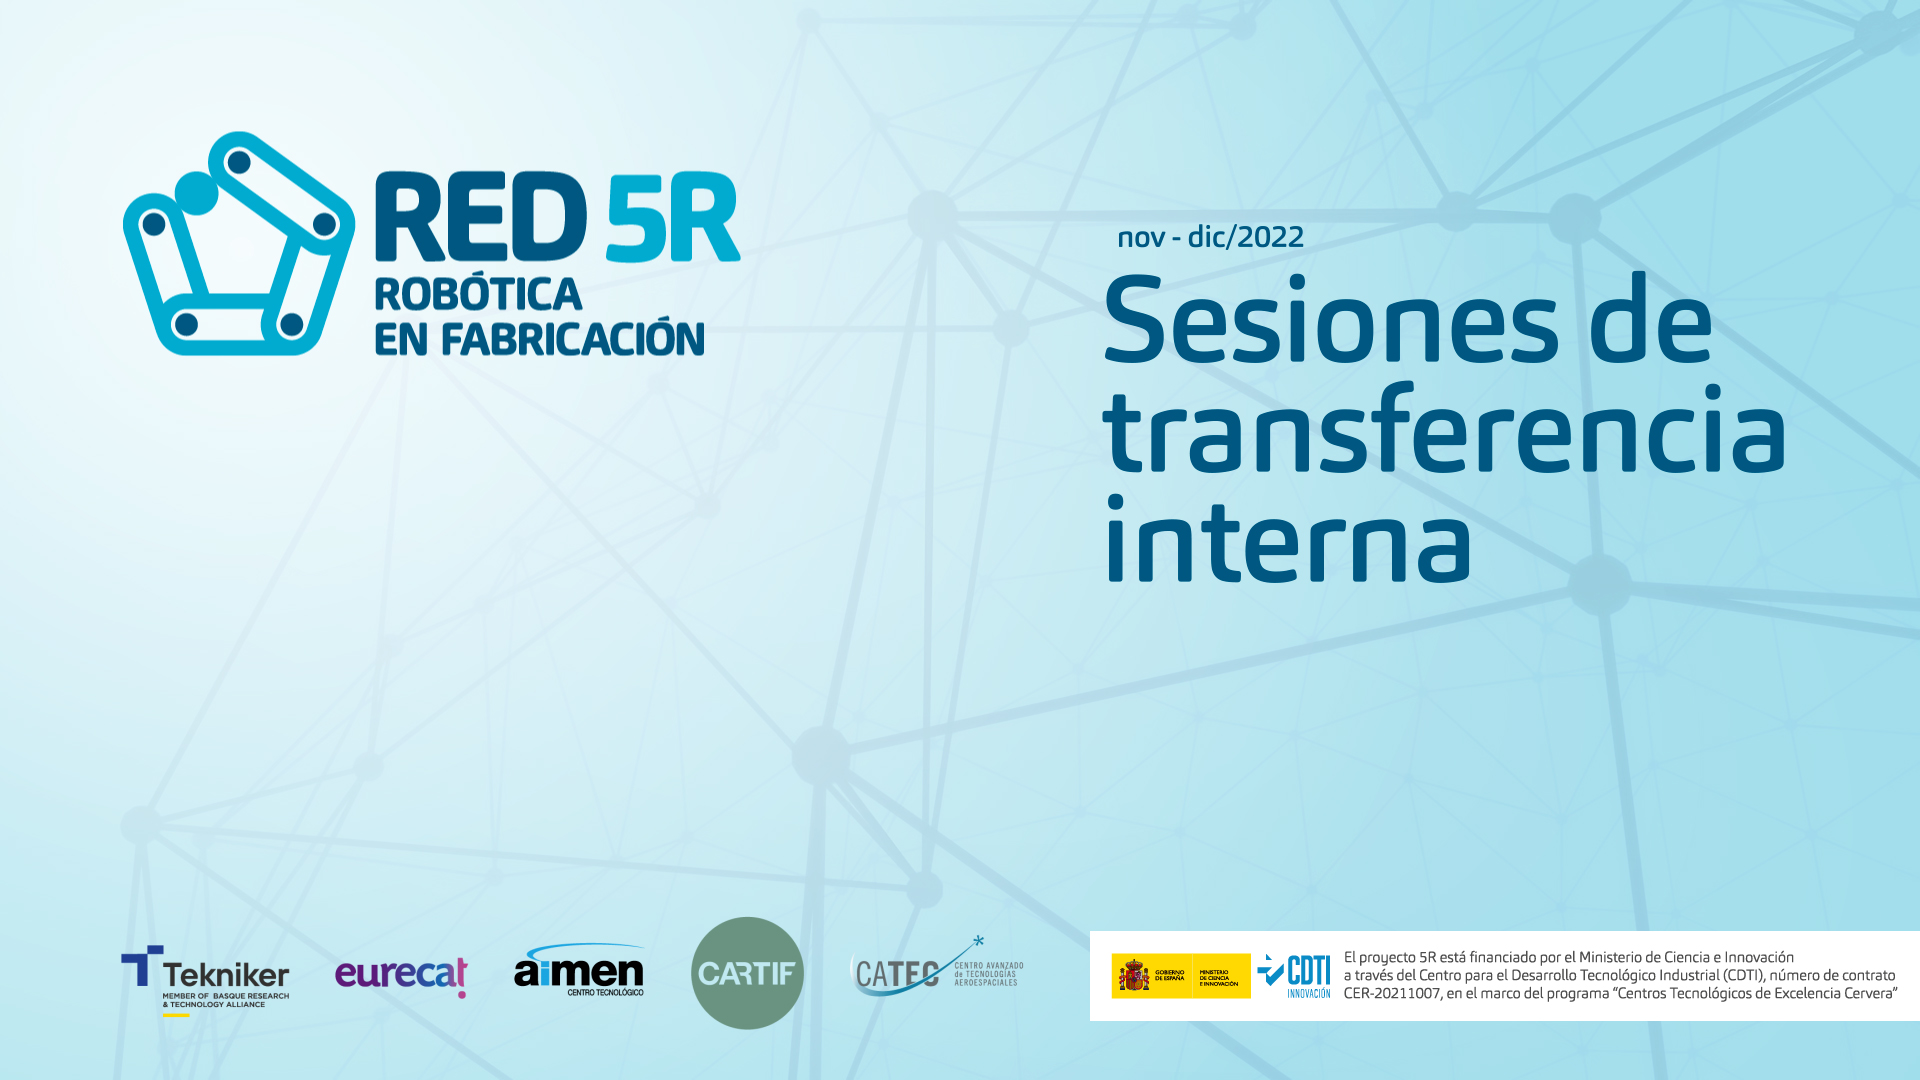 Red5R-Sesiones-transferencia-interna